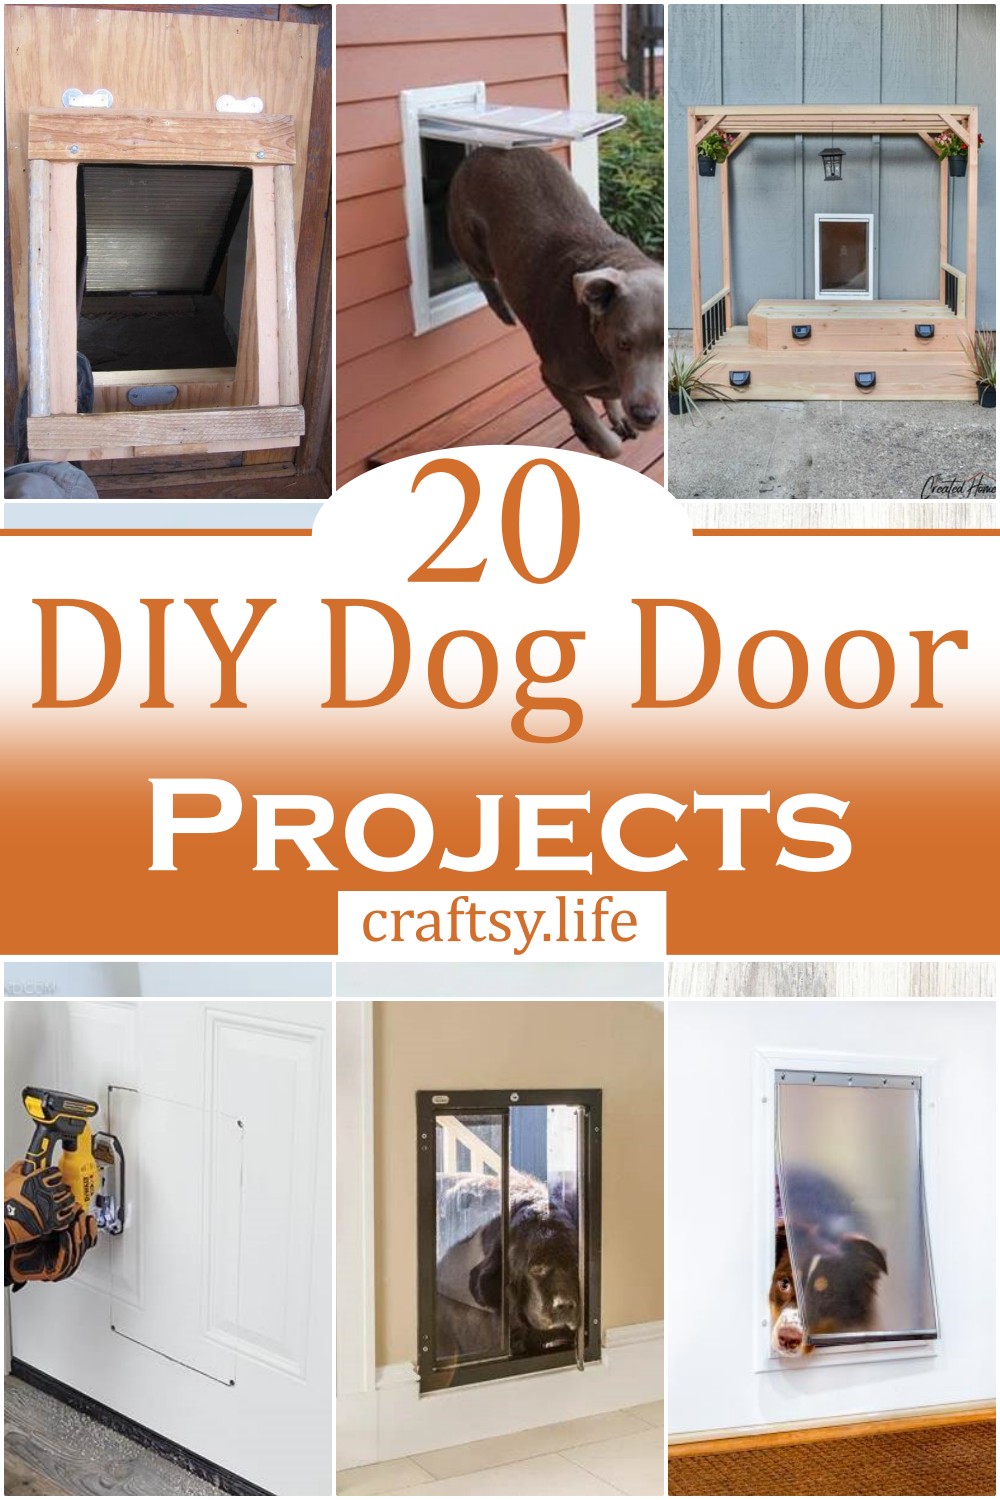 DIY Dog Door Projects